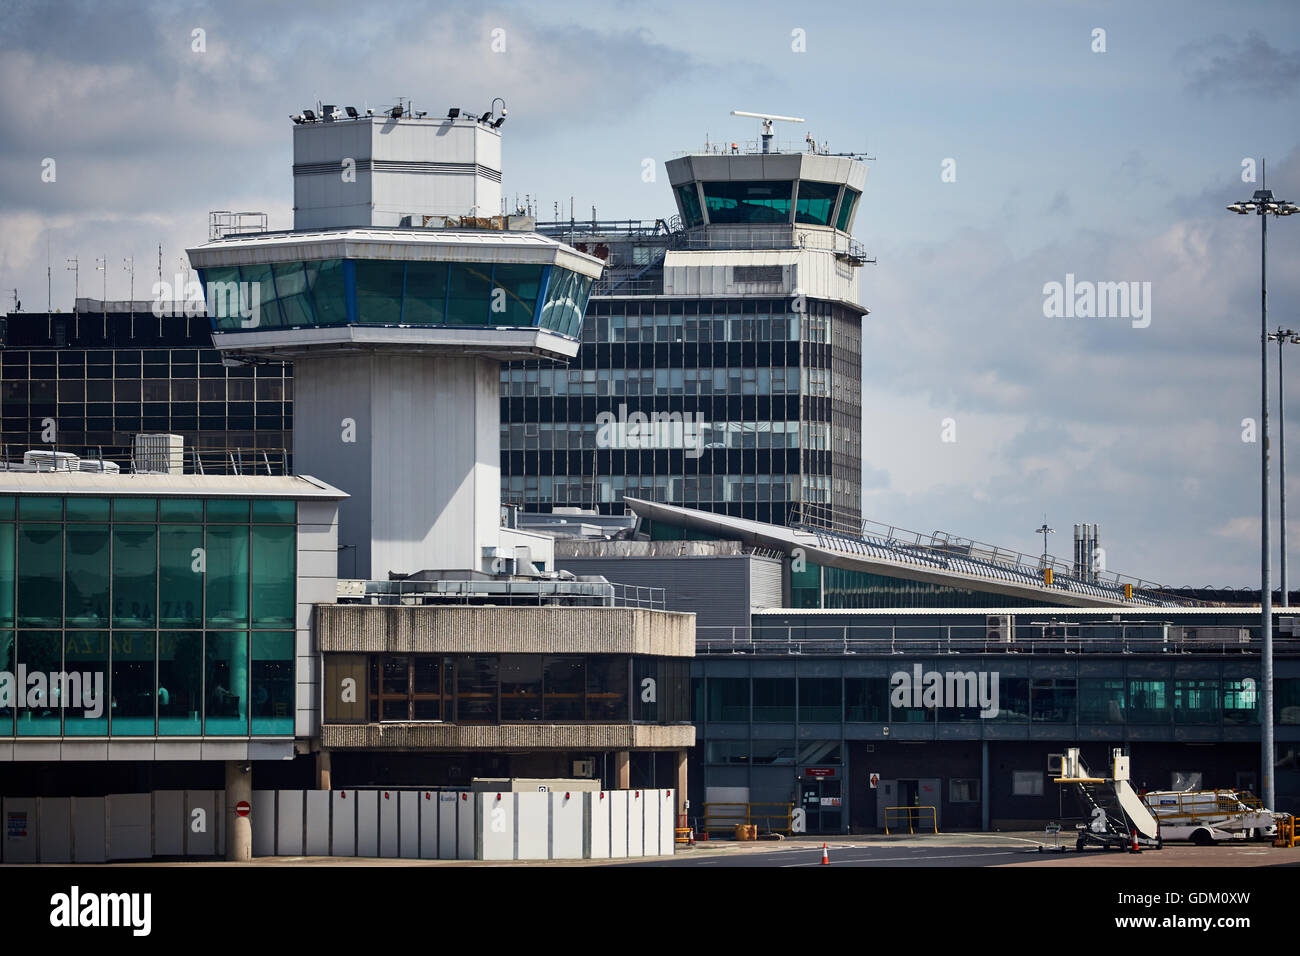 L'aéroport de Manchester Manchester tours de contrôle du trafic aérien à deux bornes 2 Banque D'Images